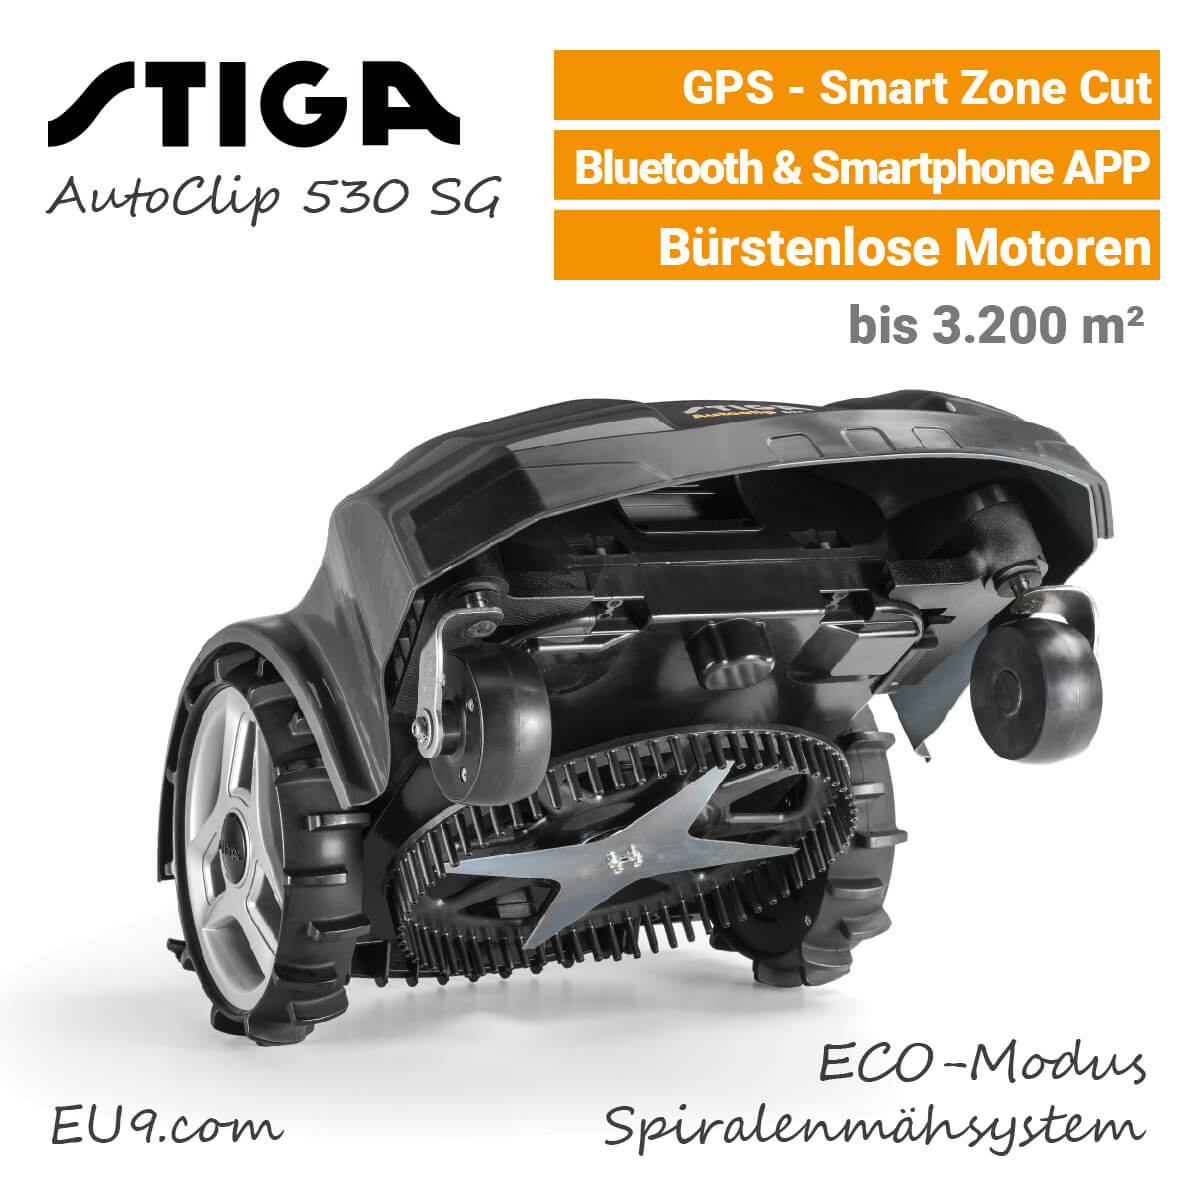 Stiga AutoClip 530 SG GPS Mähwerk Mähroboter EU9